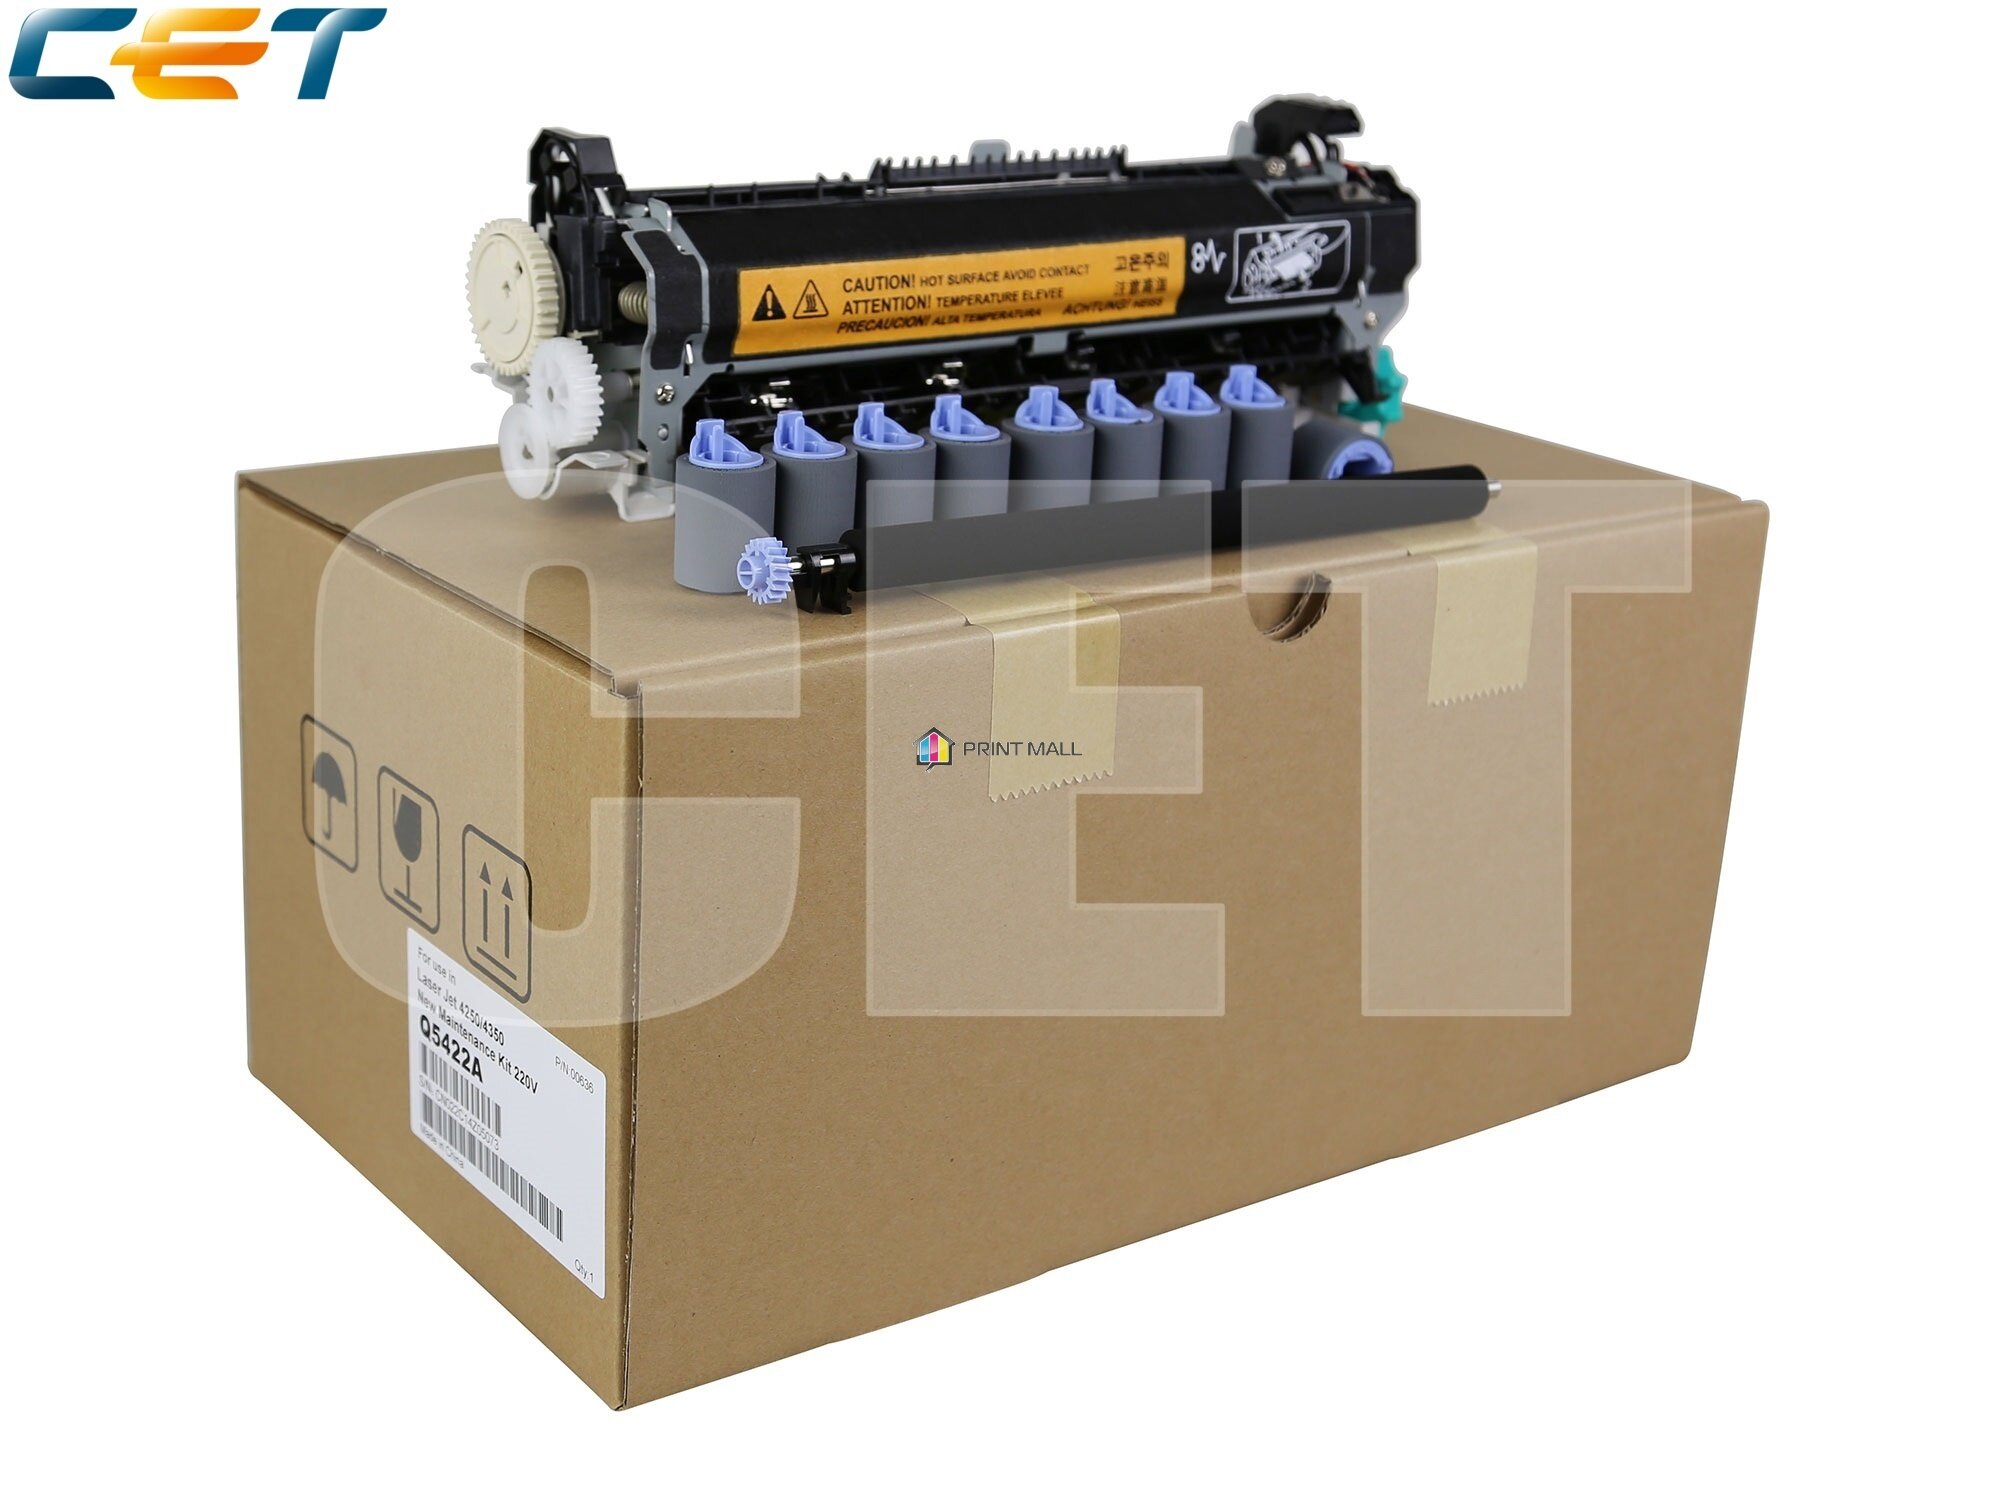 Ремонтный комплект Q5422A для HP LaserJet 4250/4350 (CET), CET0636 Q5422A